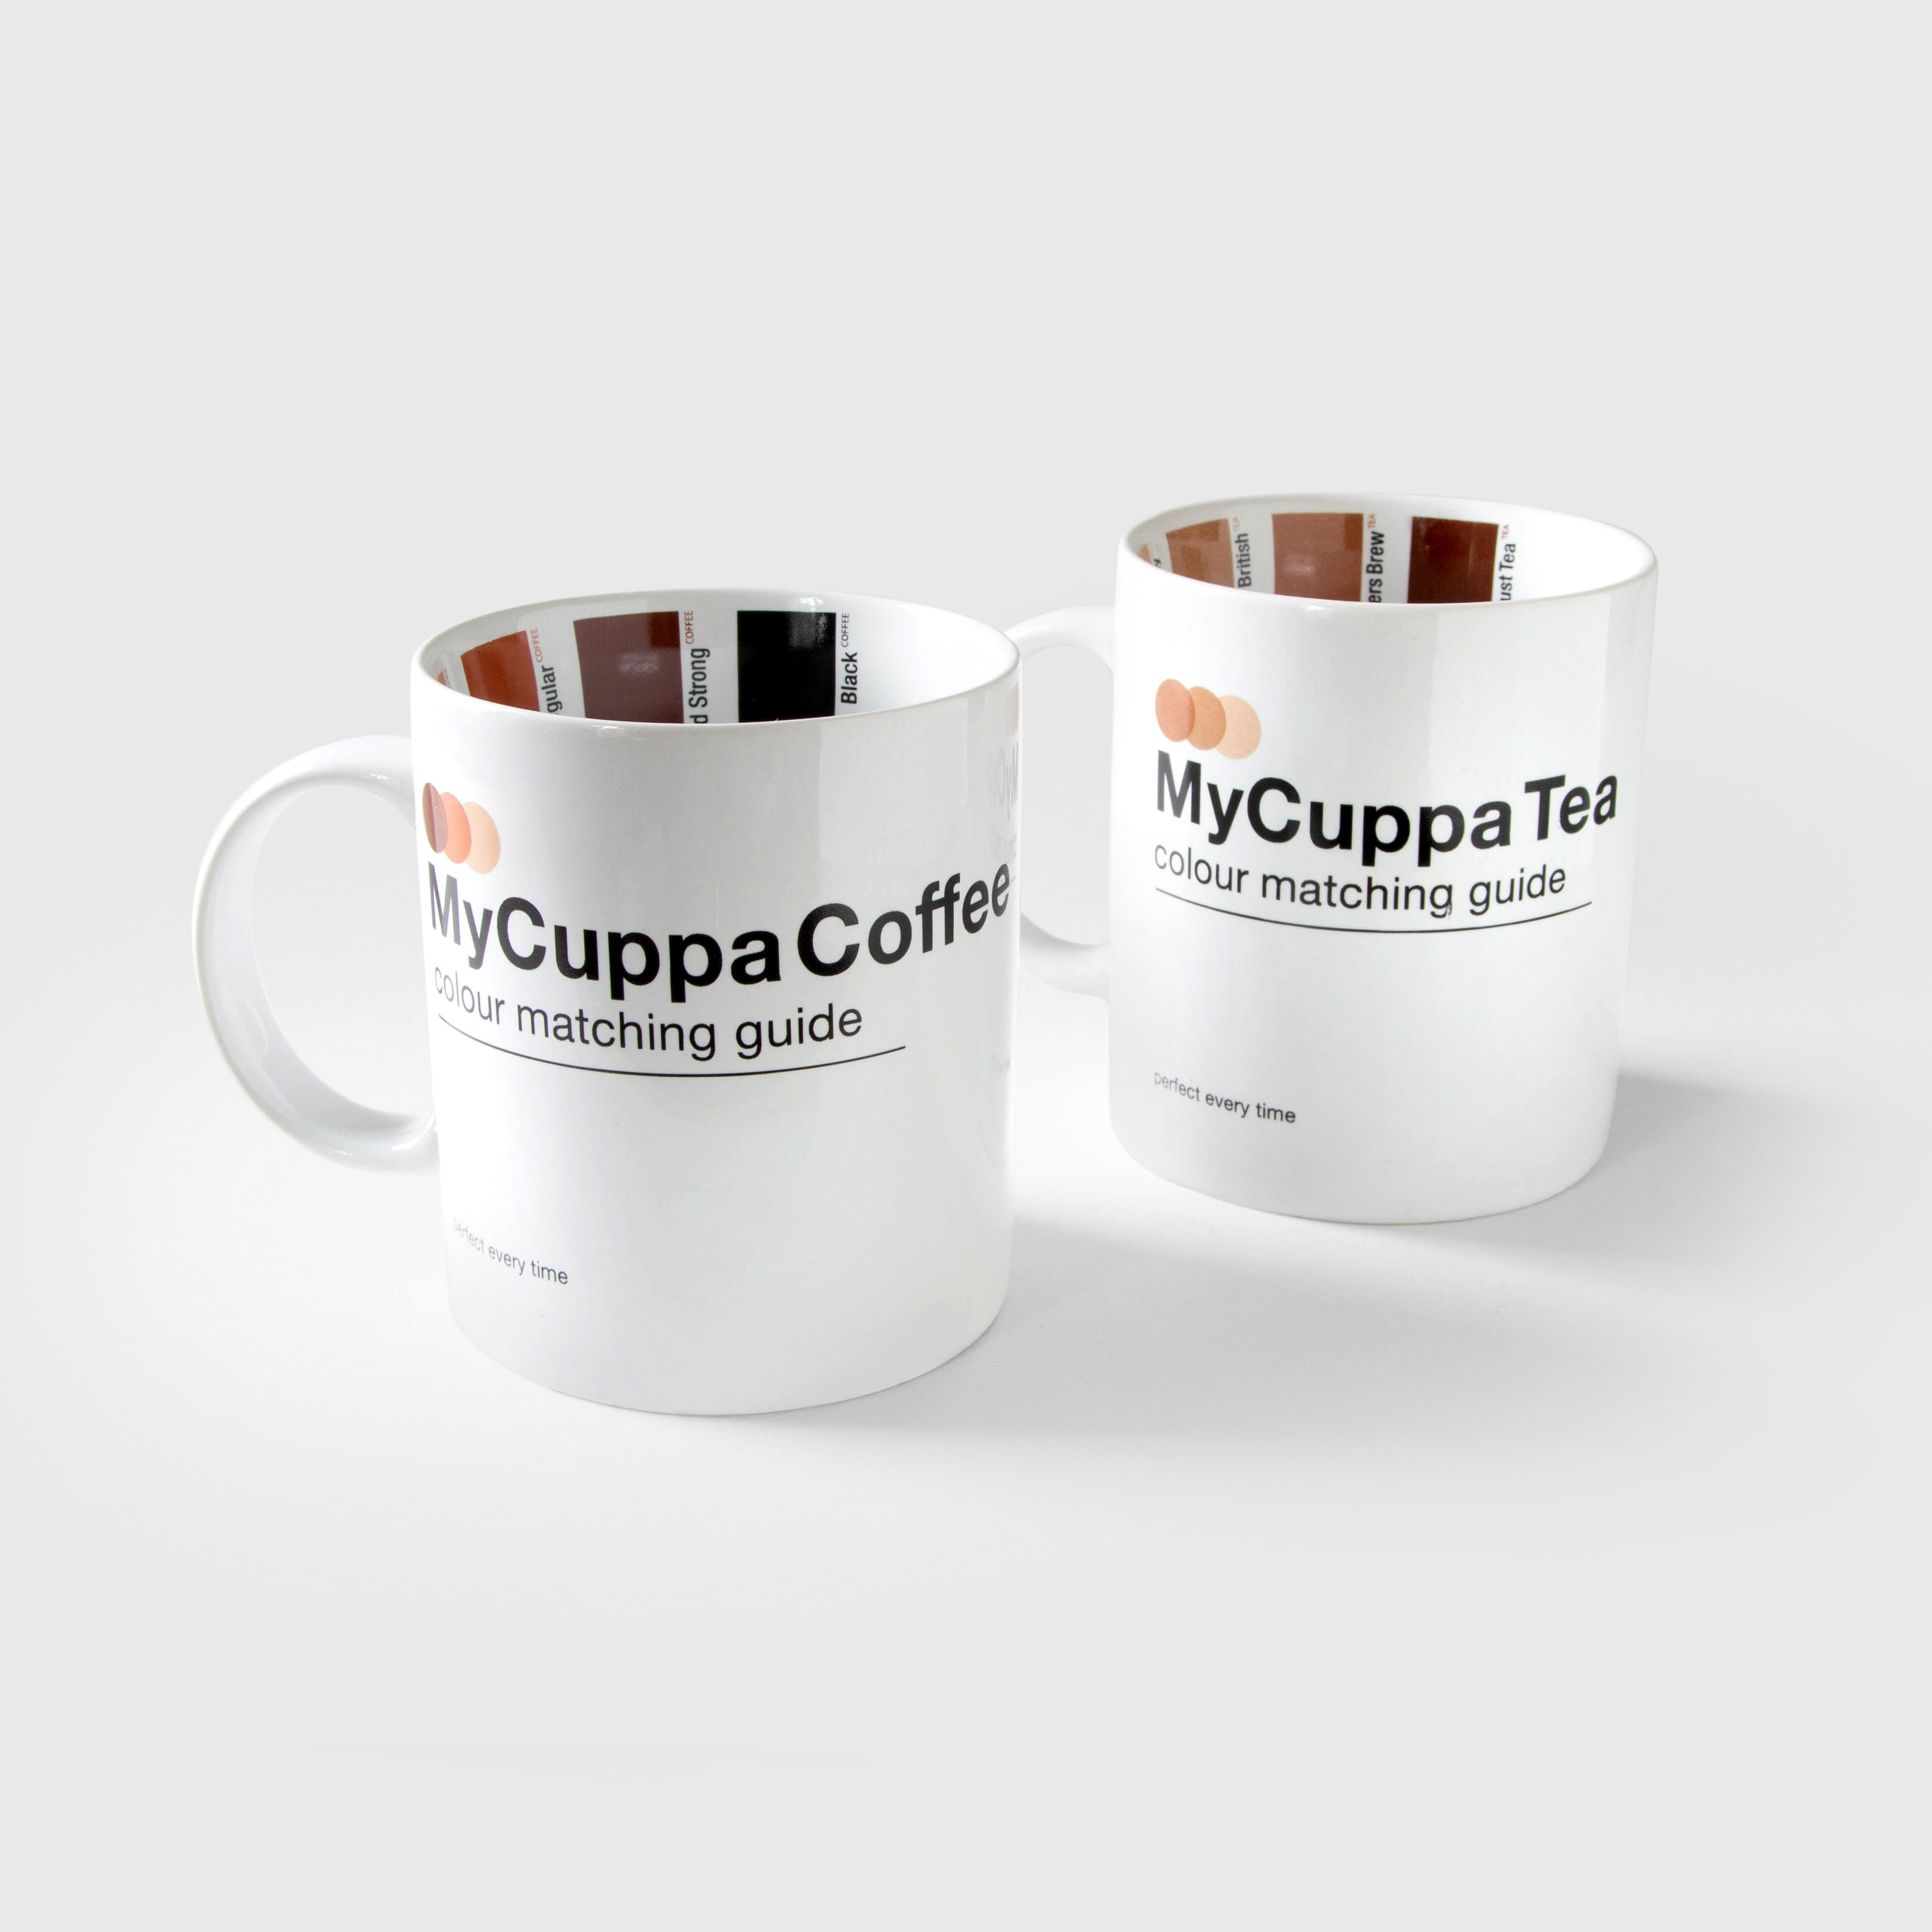 my cuppa coffee and my cuppa tea mugs